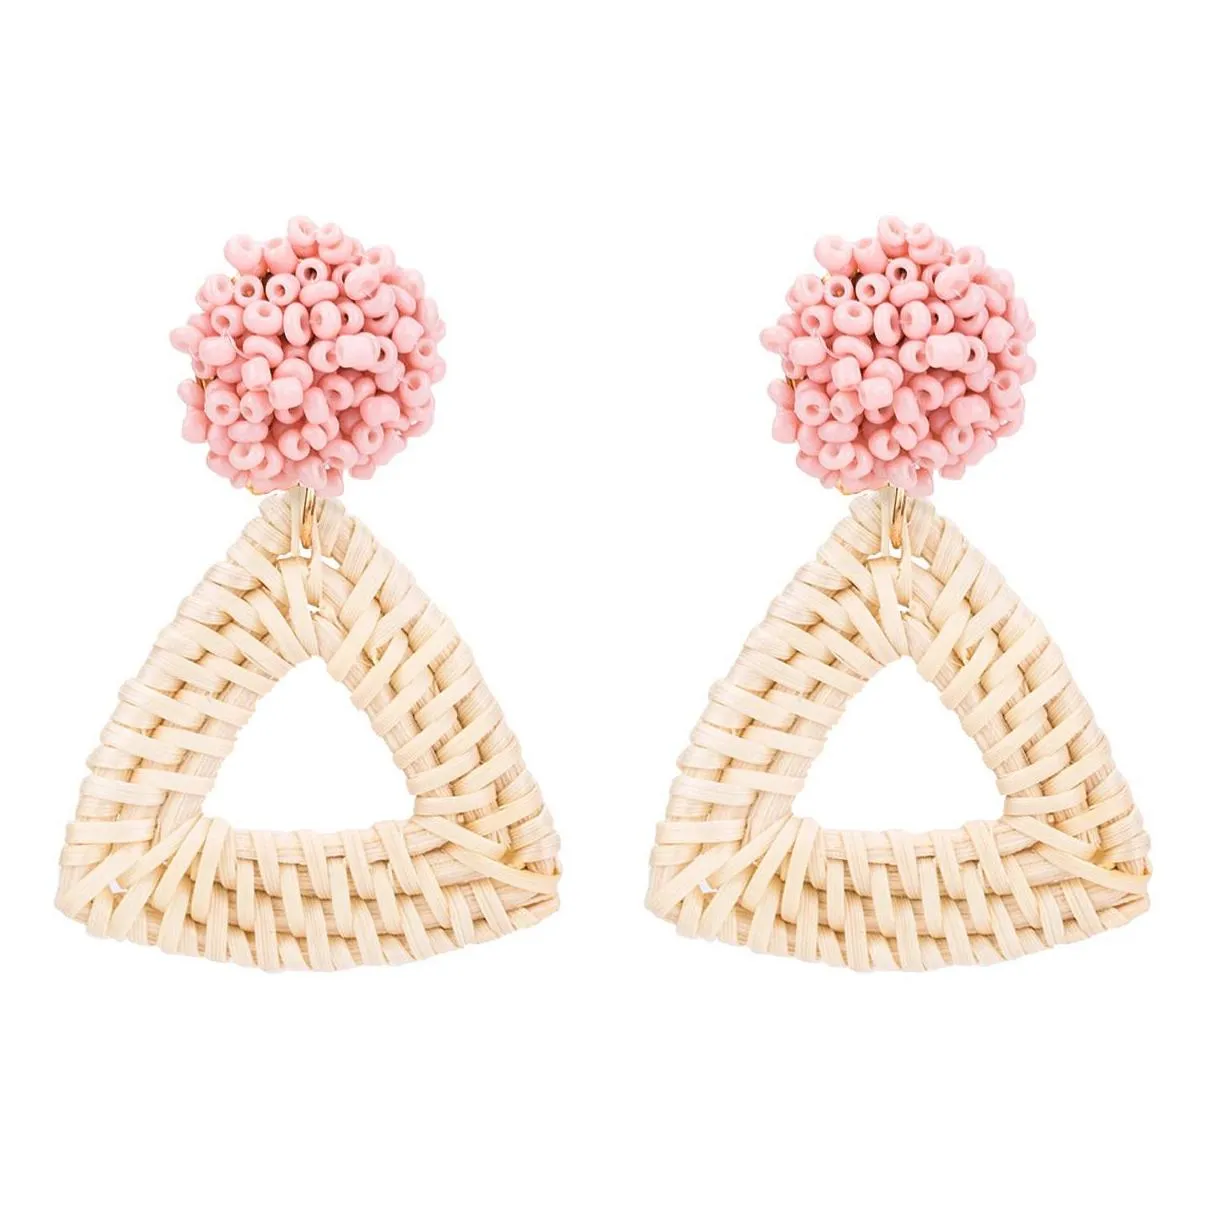 Rattan earrings straw wicker woven pendant earrings triangle ladies girls light handmade ball